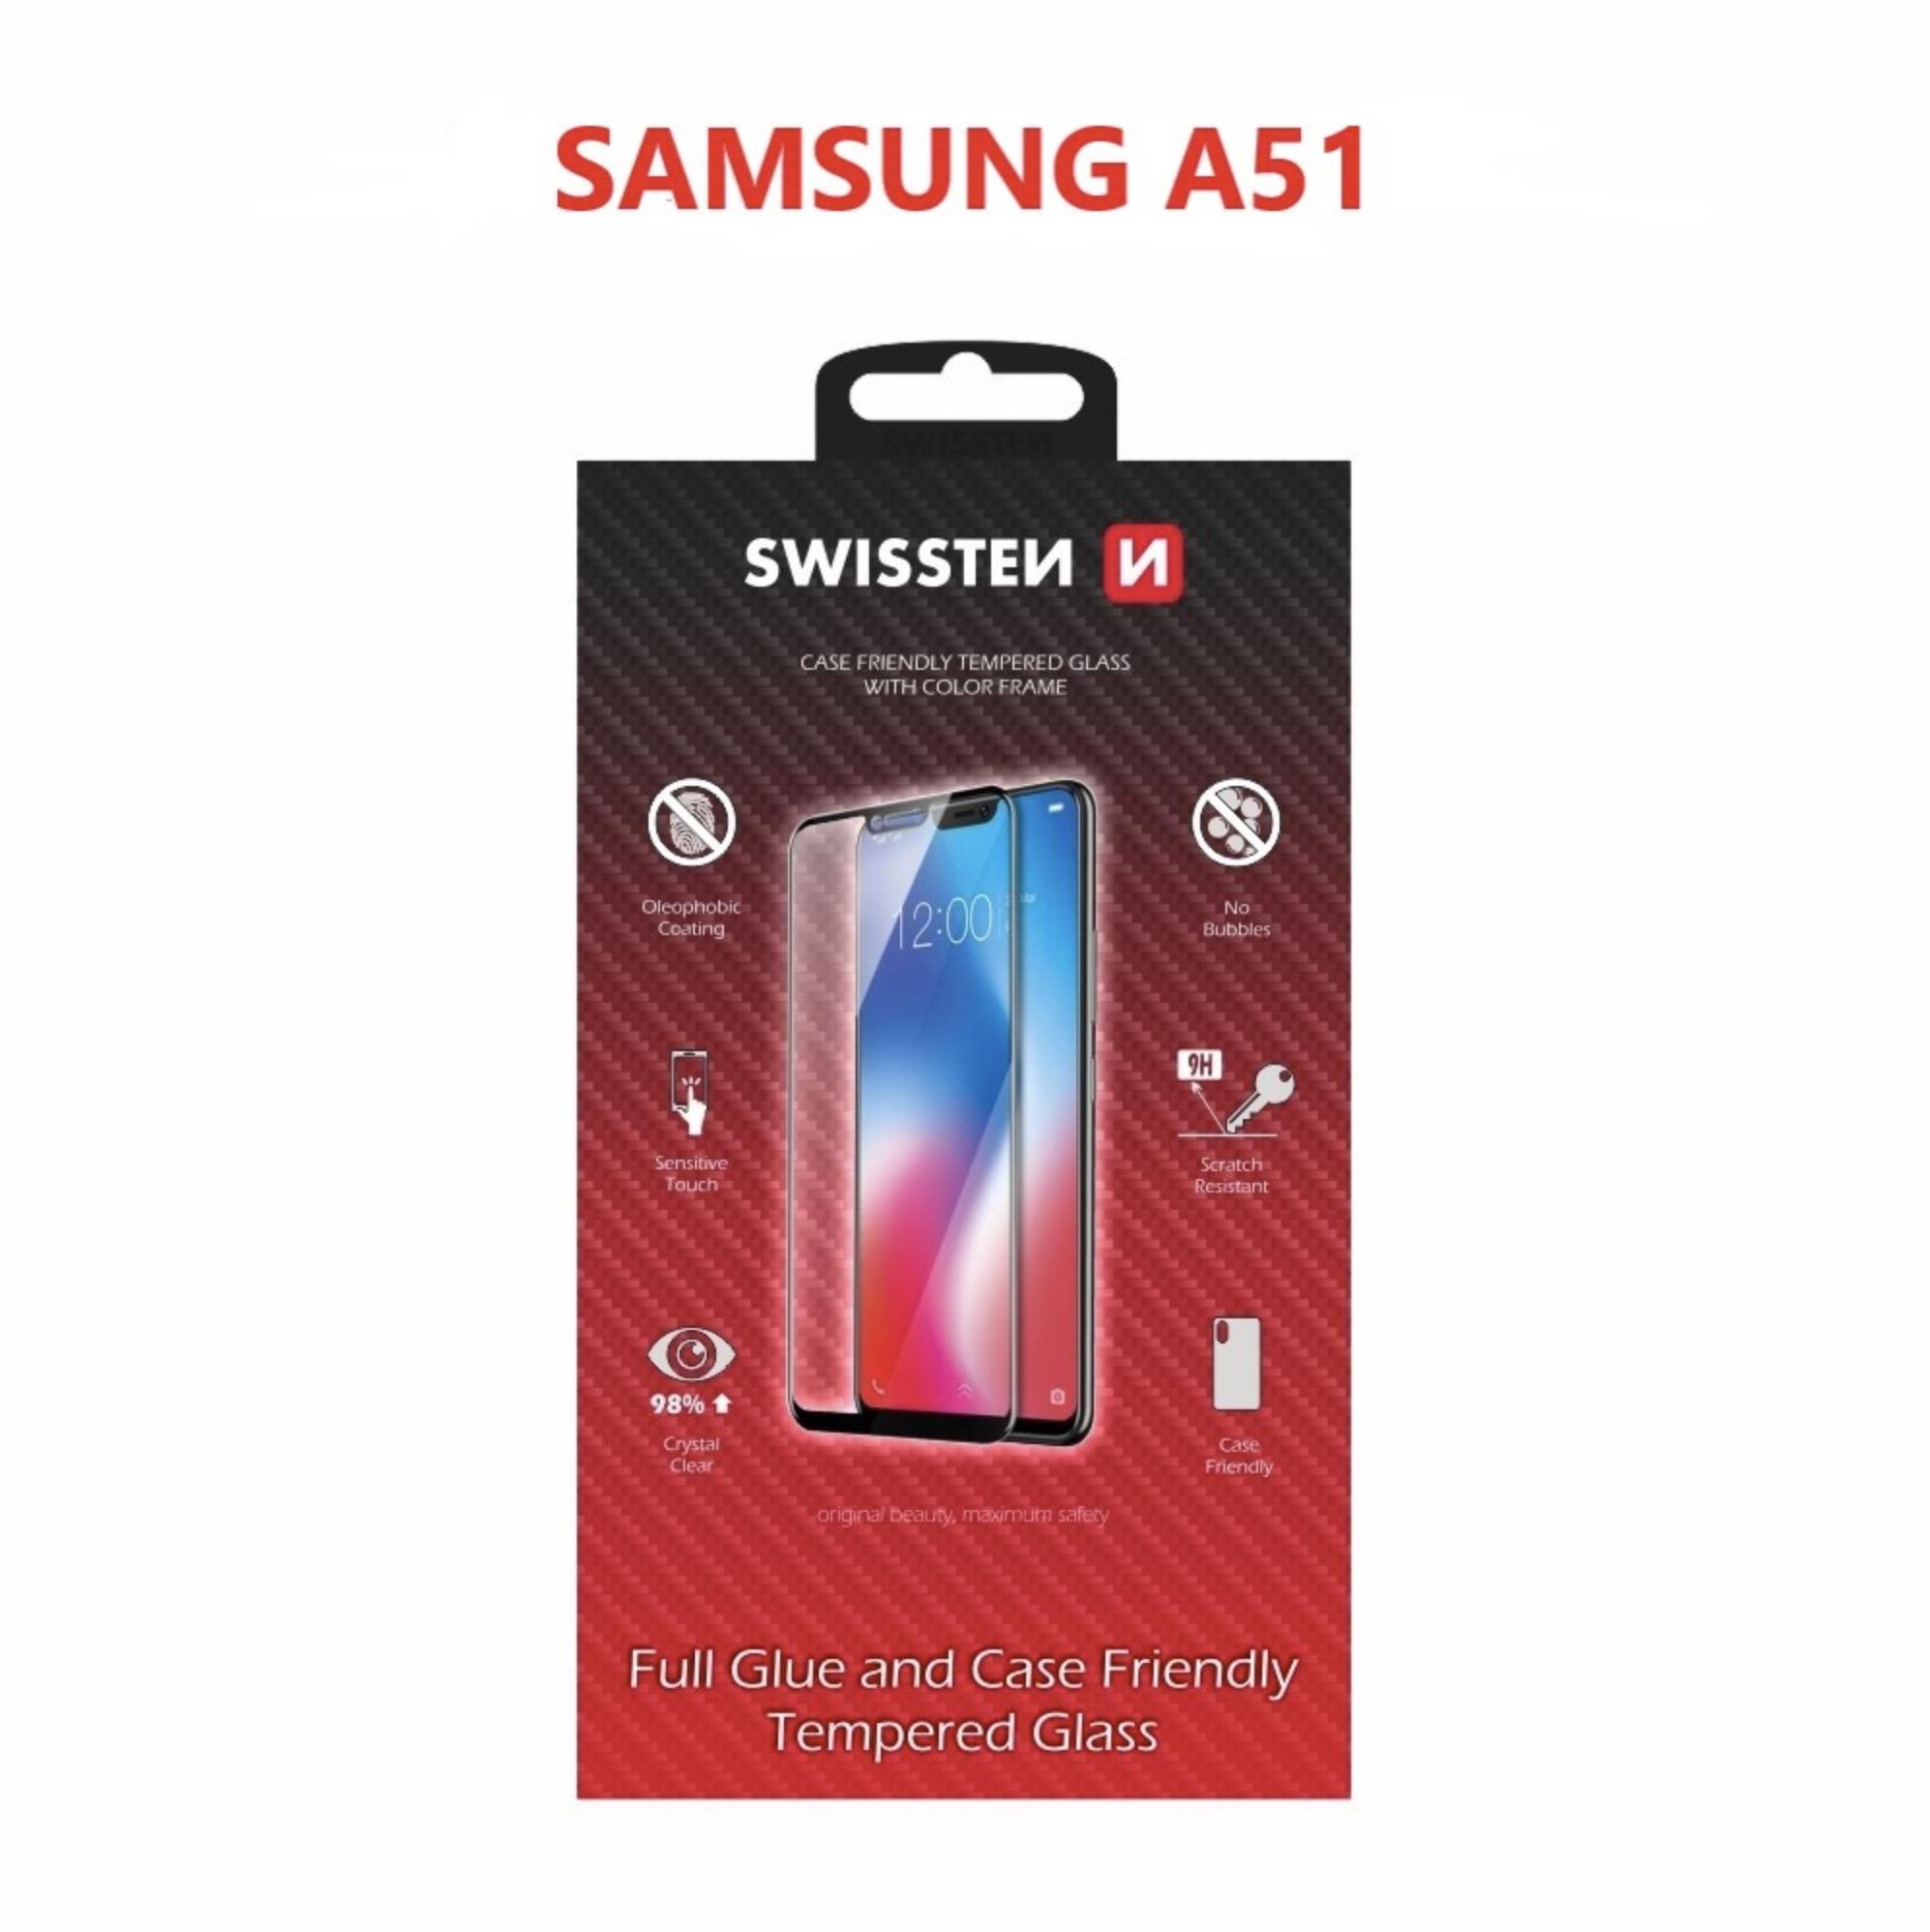 Üvegfólia Swissten Case Friendly a Samsung Galaxy A51 készülékhez - fekete